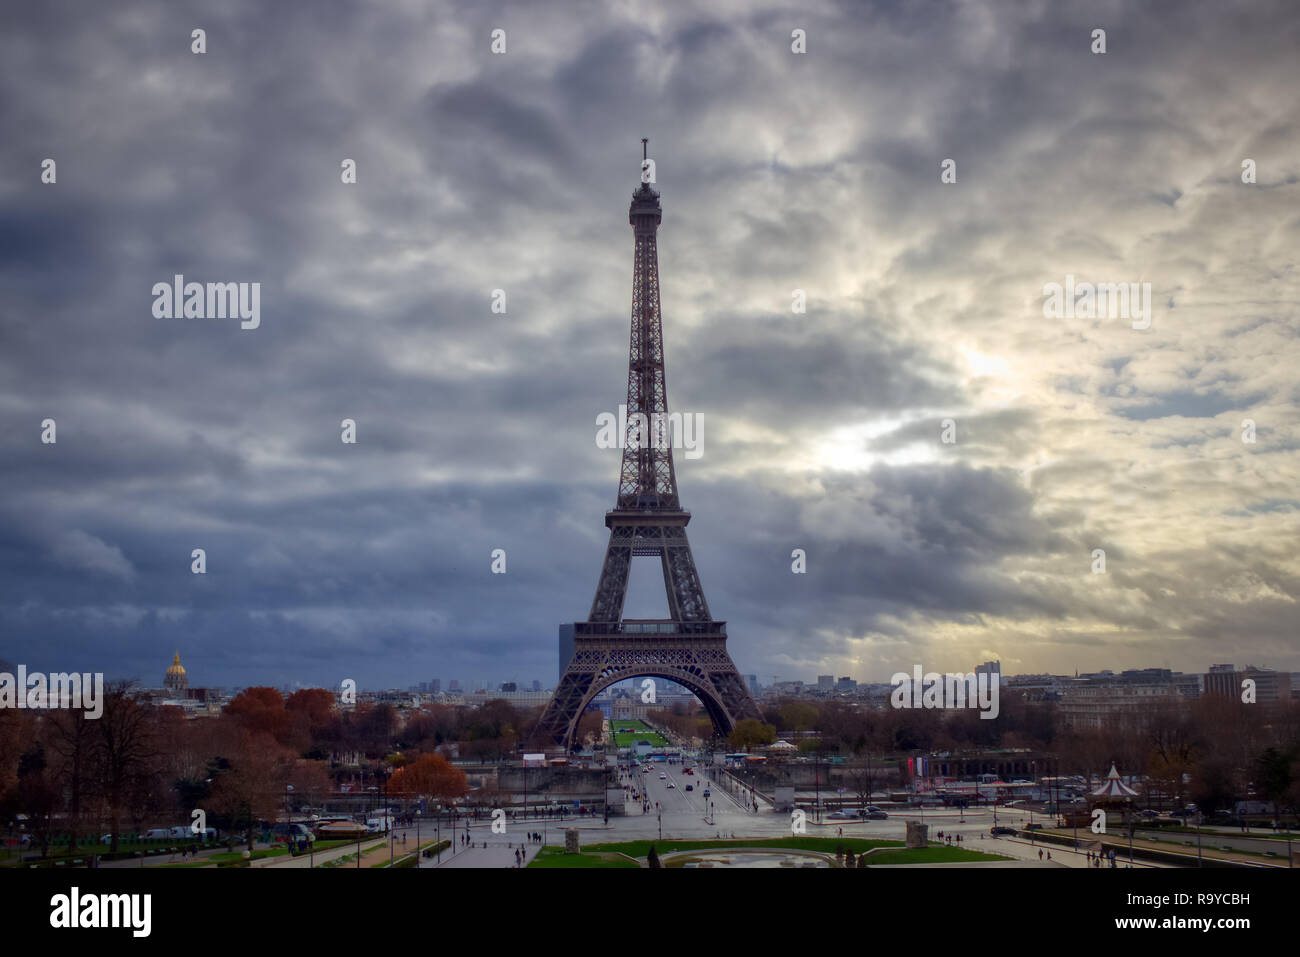 Vue imprenable de la Tour Eiffel Trocadéro Gardens sur une journée d'automne nuageux avec ciel dramatique, Paris, France Banque D'Images